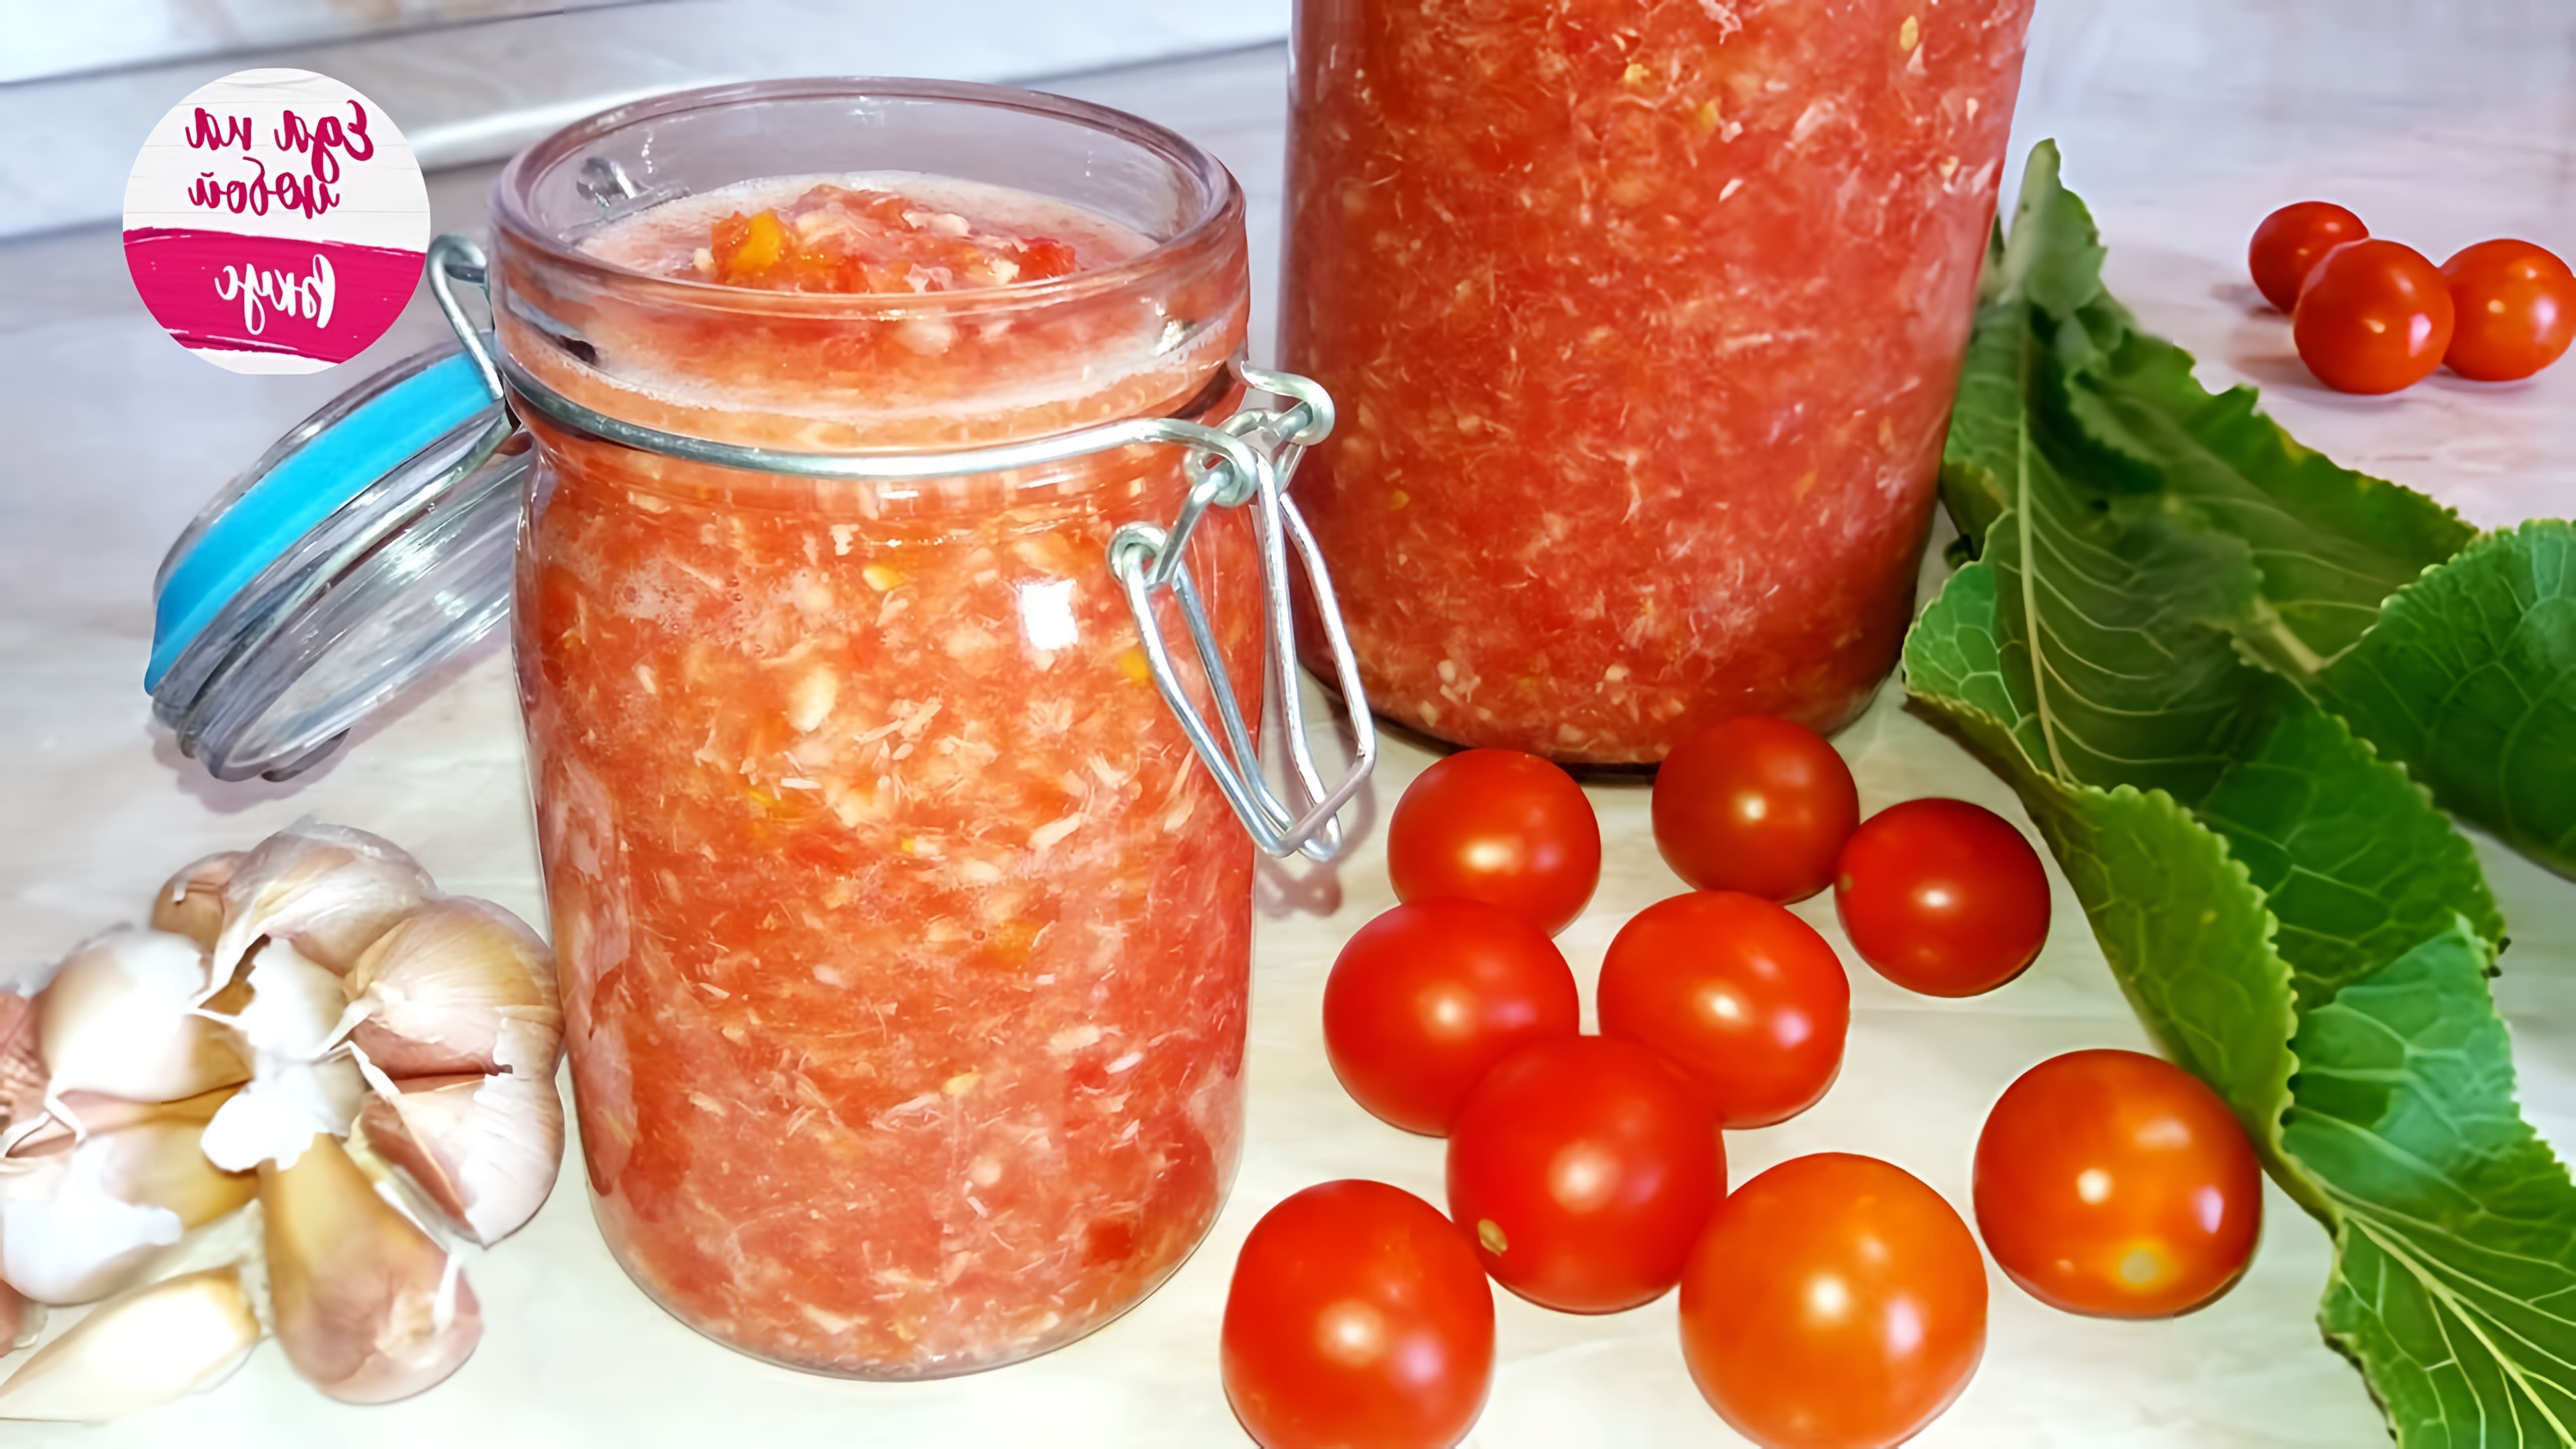 В этом видео Анастасия готовит хреновину - острый соус из помидоров, чеснока и хрена